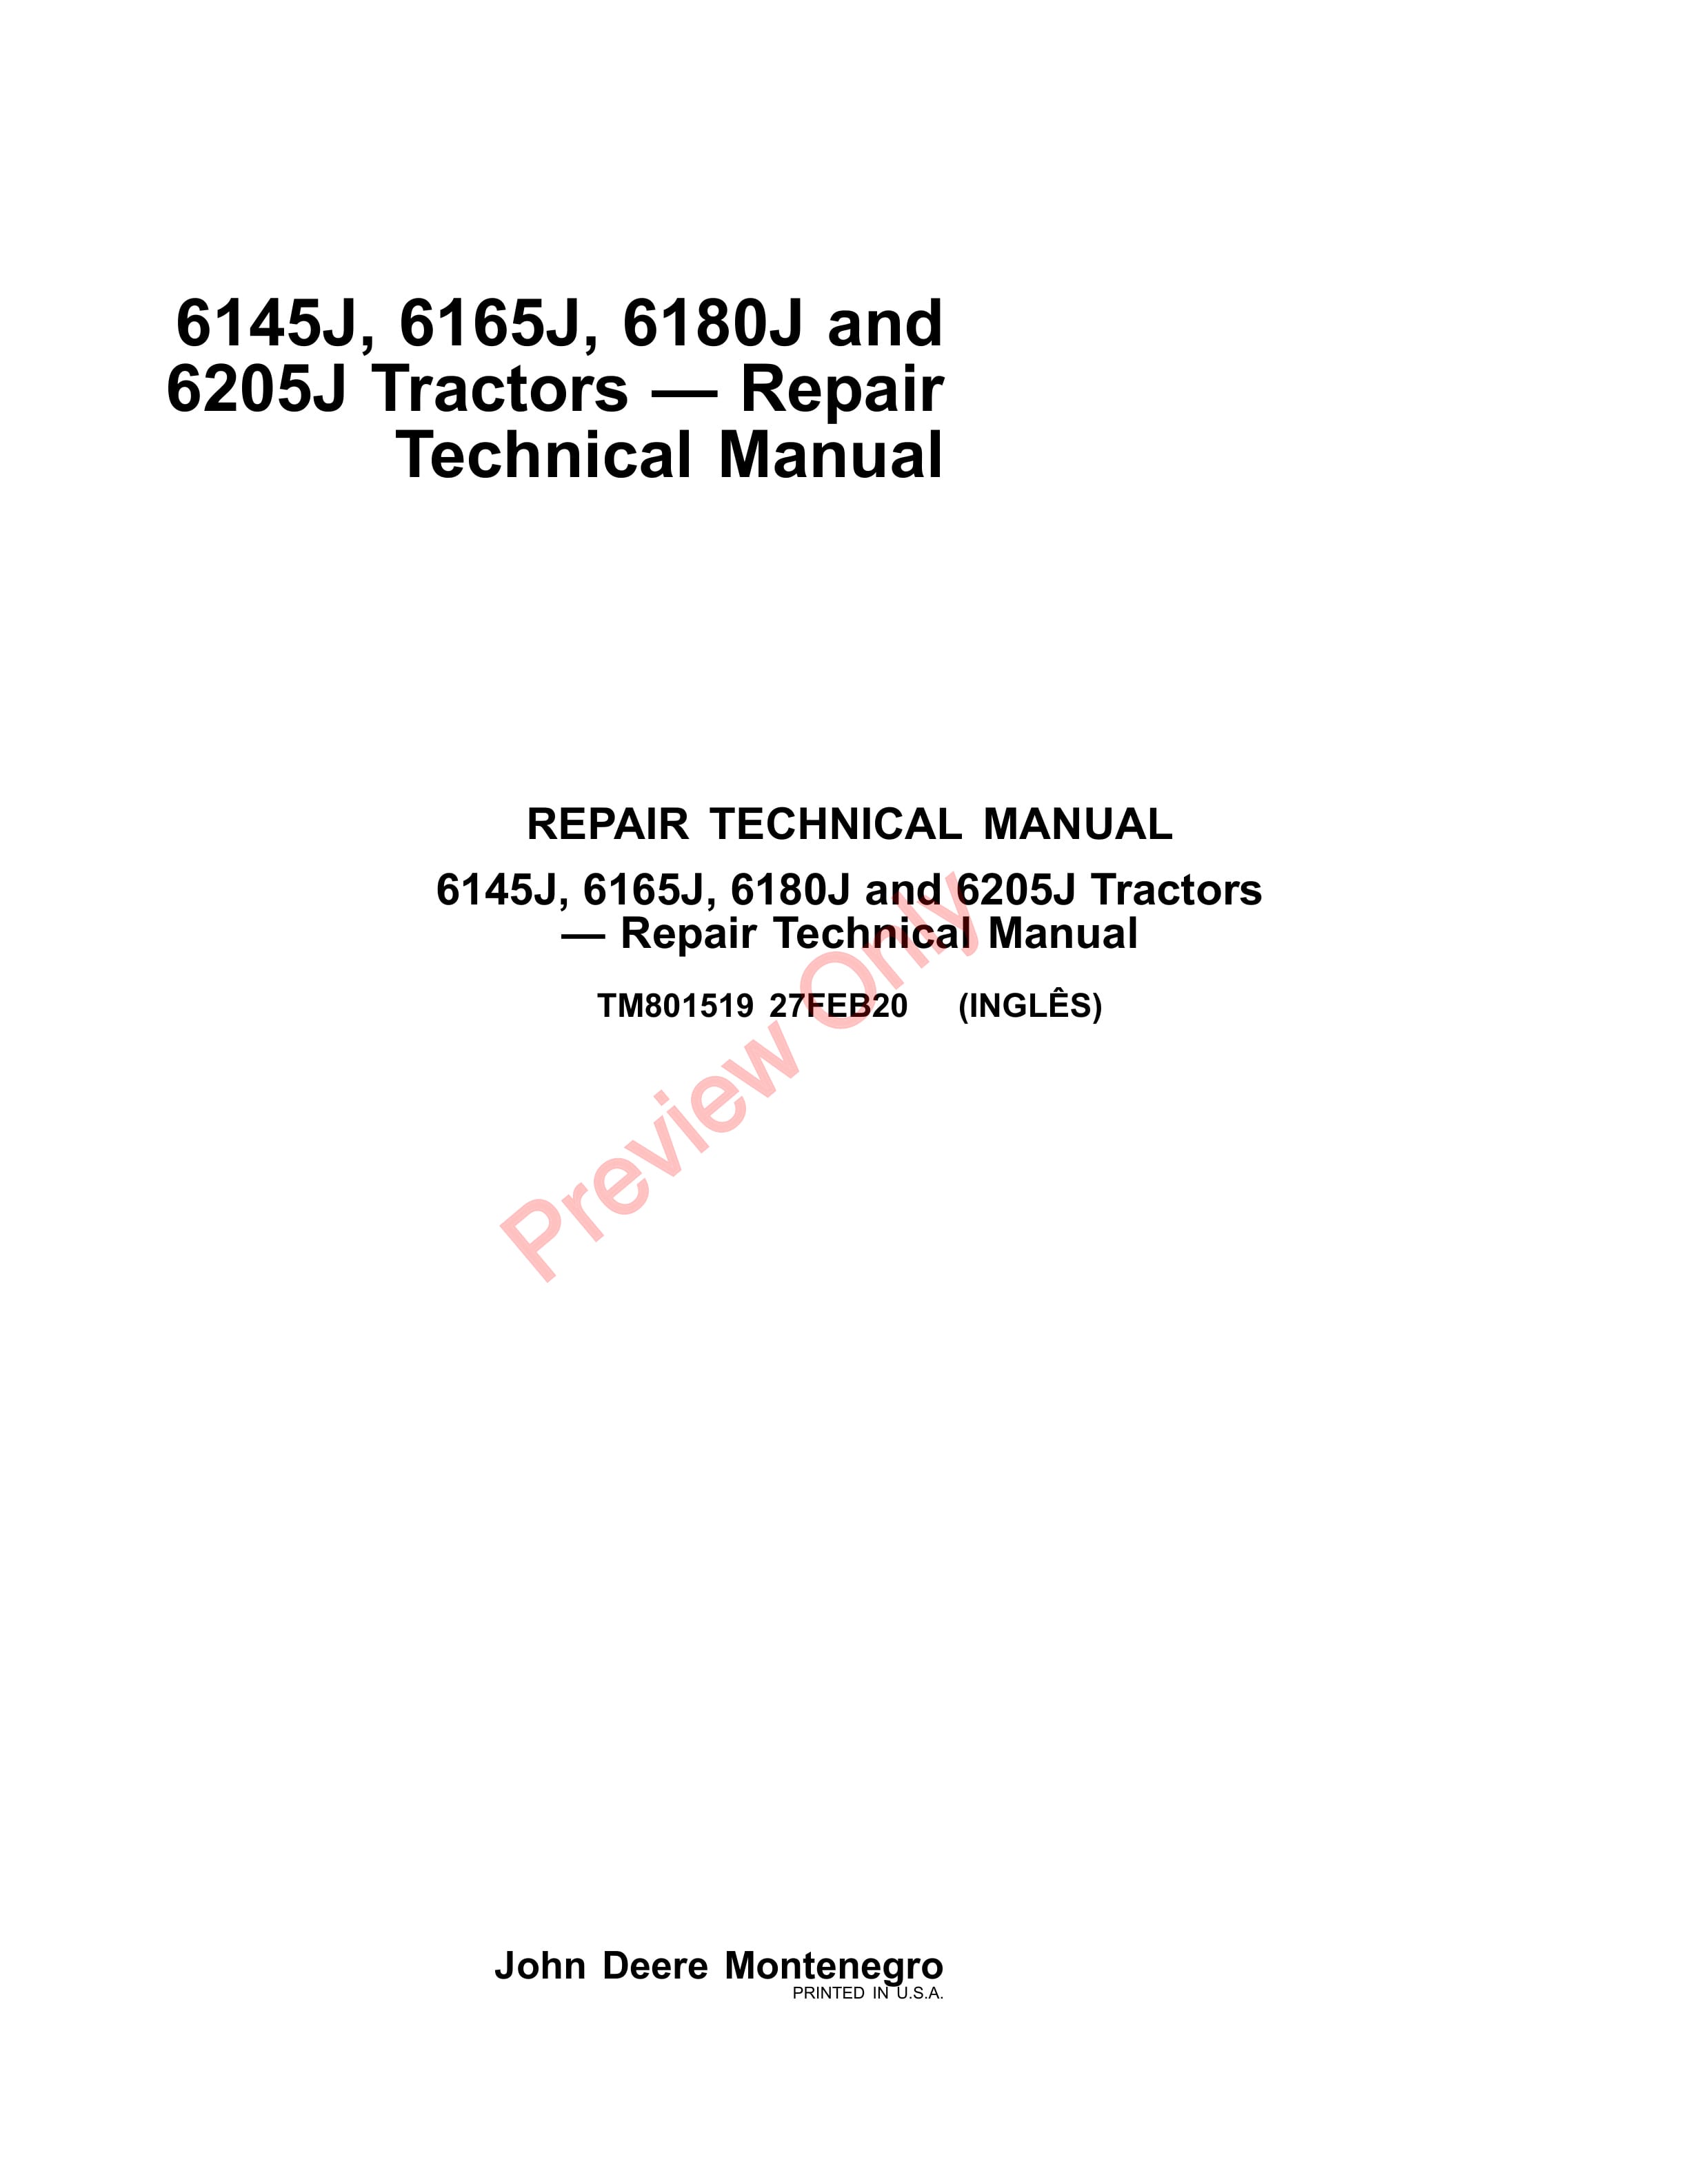 John Deere 6145J 6165J 6180J and 6205J Tractors Repair Technical Manual TM801519 27FEB20 1